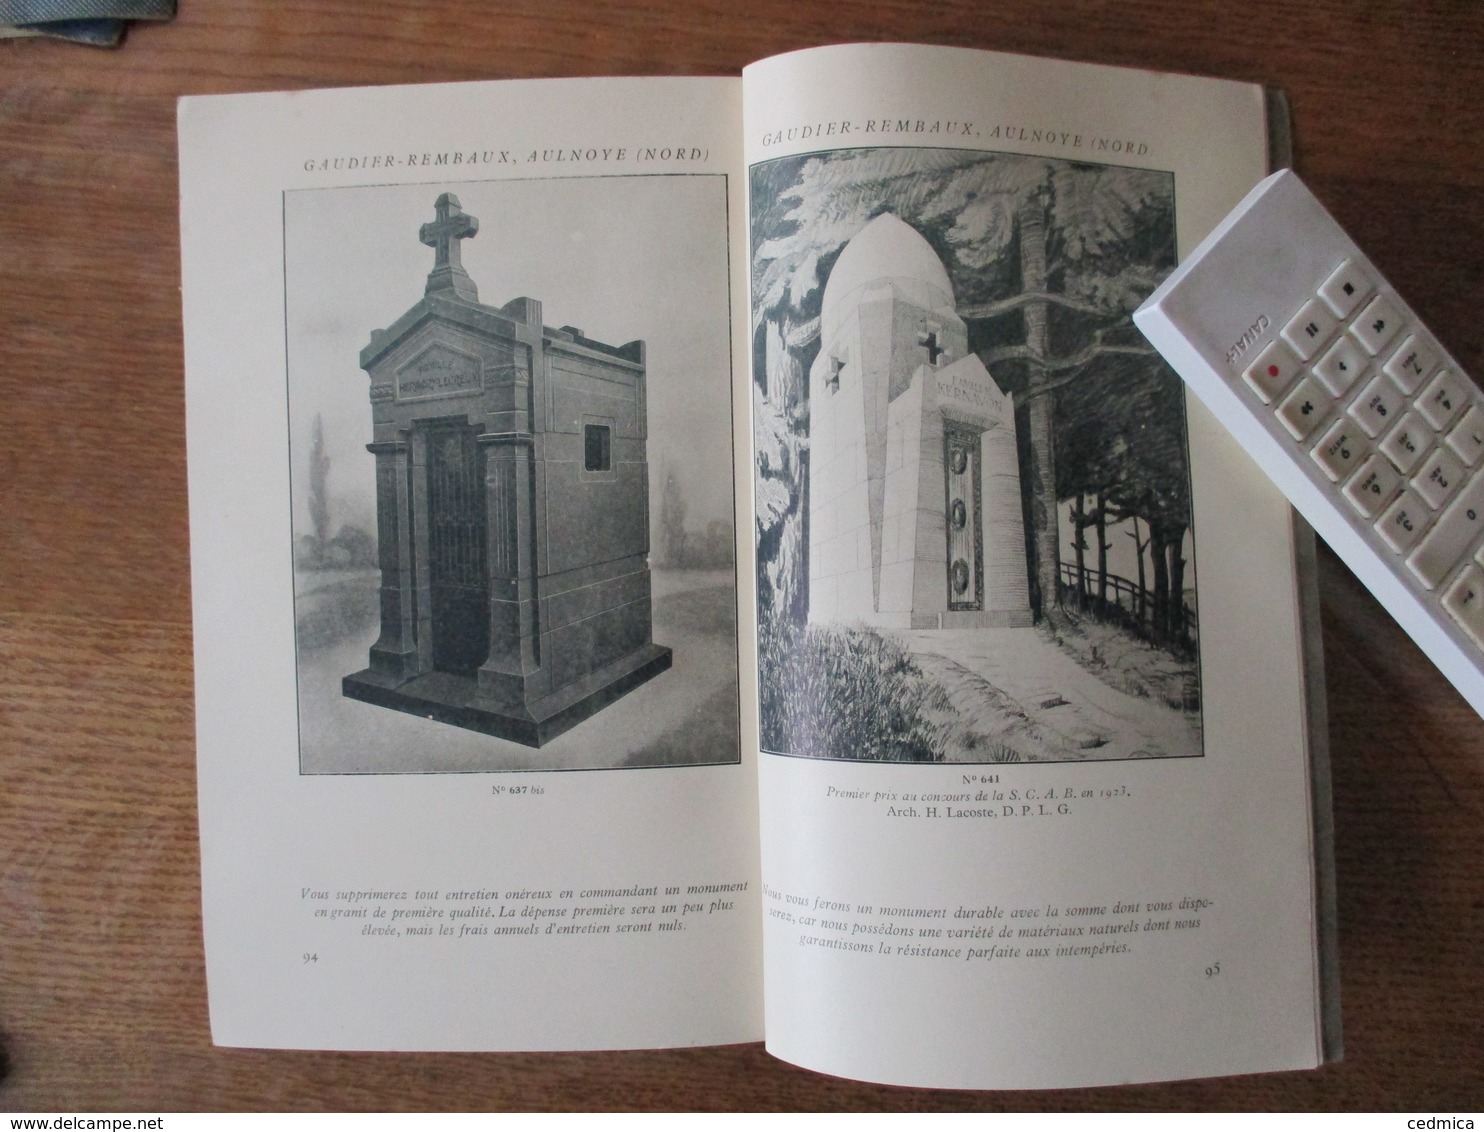 AULNOYE NORD GAUDIER REMBAUX MONUMENTS FUNERAIRES SOCIETE GRANITIERE DU NORD CATALOGUE 1925 98 PAGES